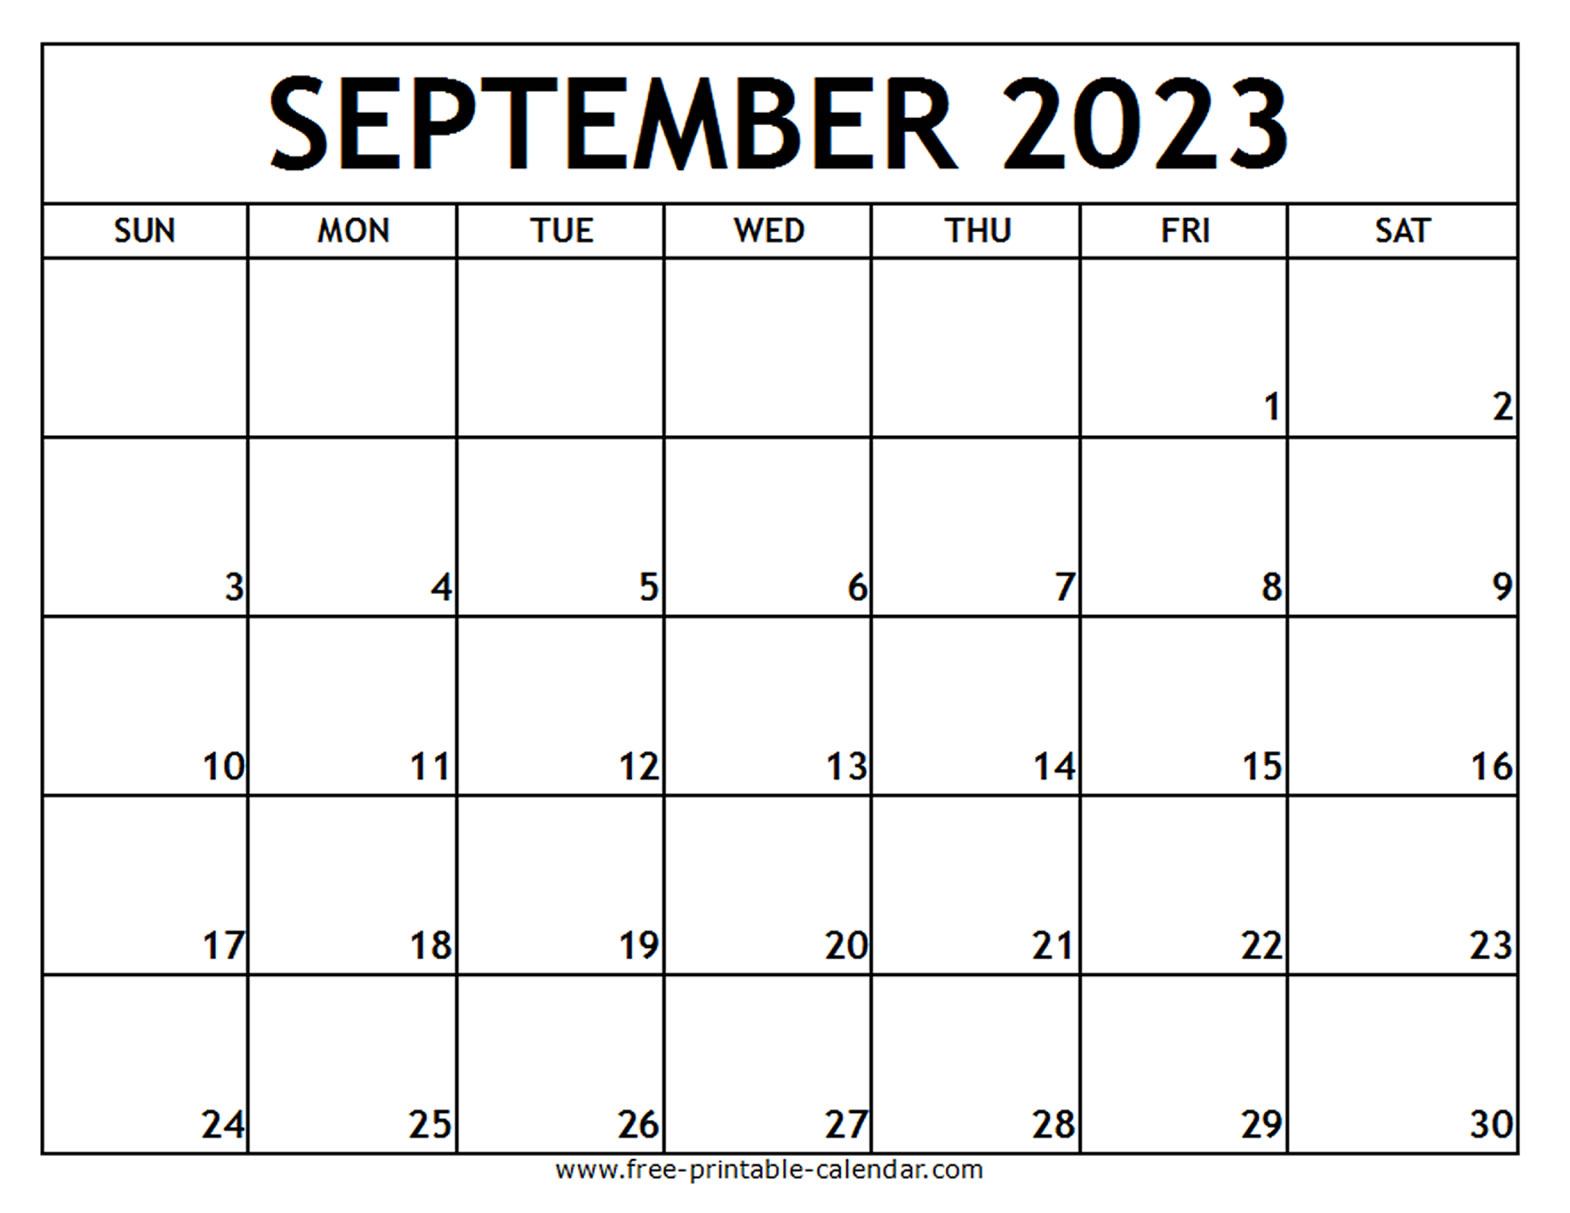 march 2023 calendar canada get calendar 2023 update september 2023